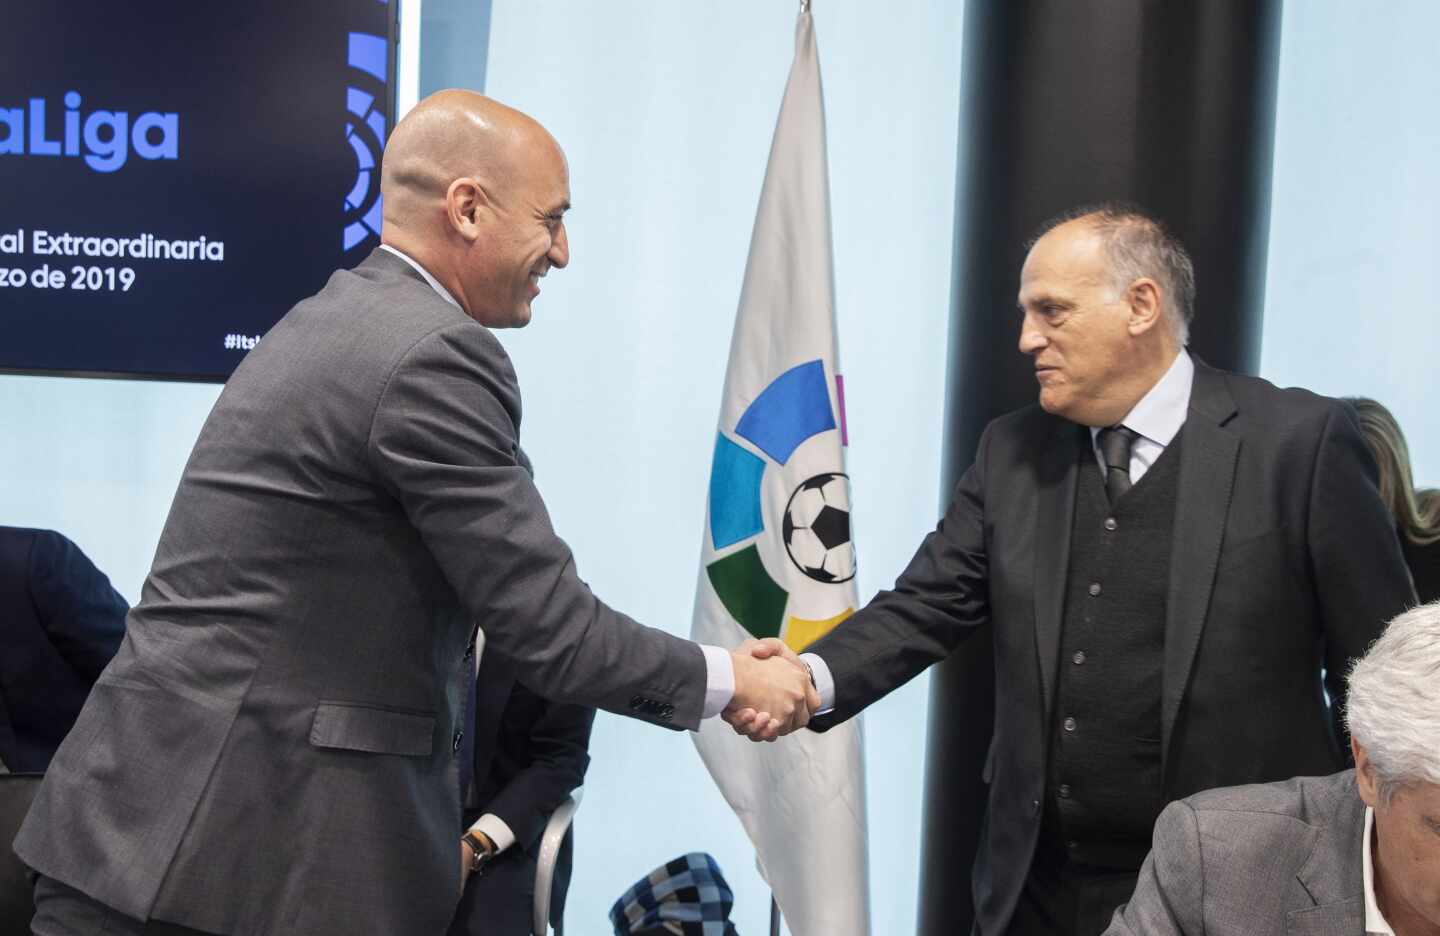 El presidente de la Real Federación Española de Fútbol (RFEF), Luis Rubiales, saluda al máximo responsable de LaLiga, Javier Tebas.